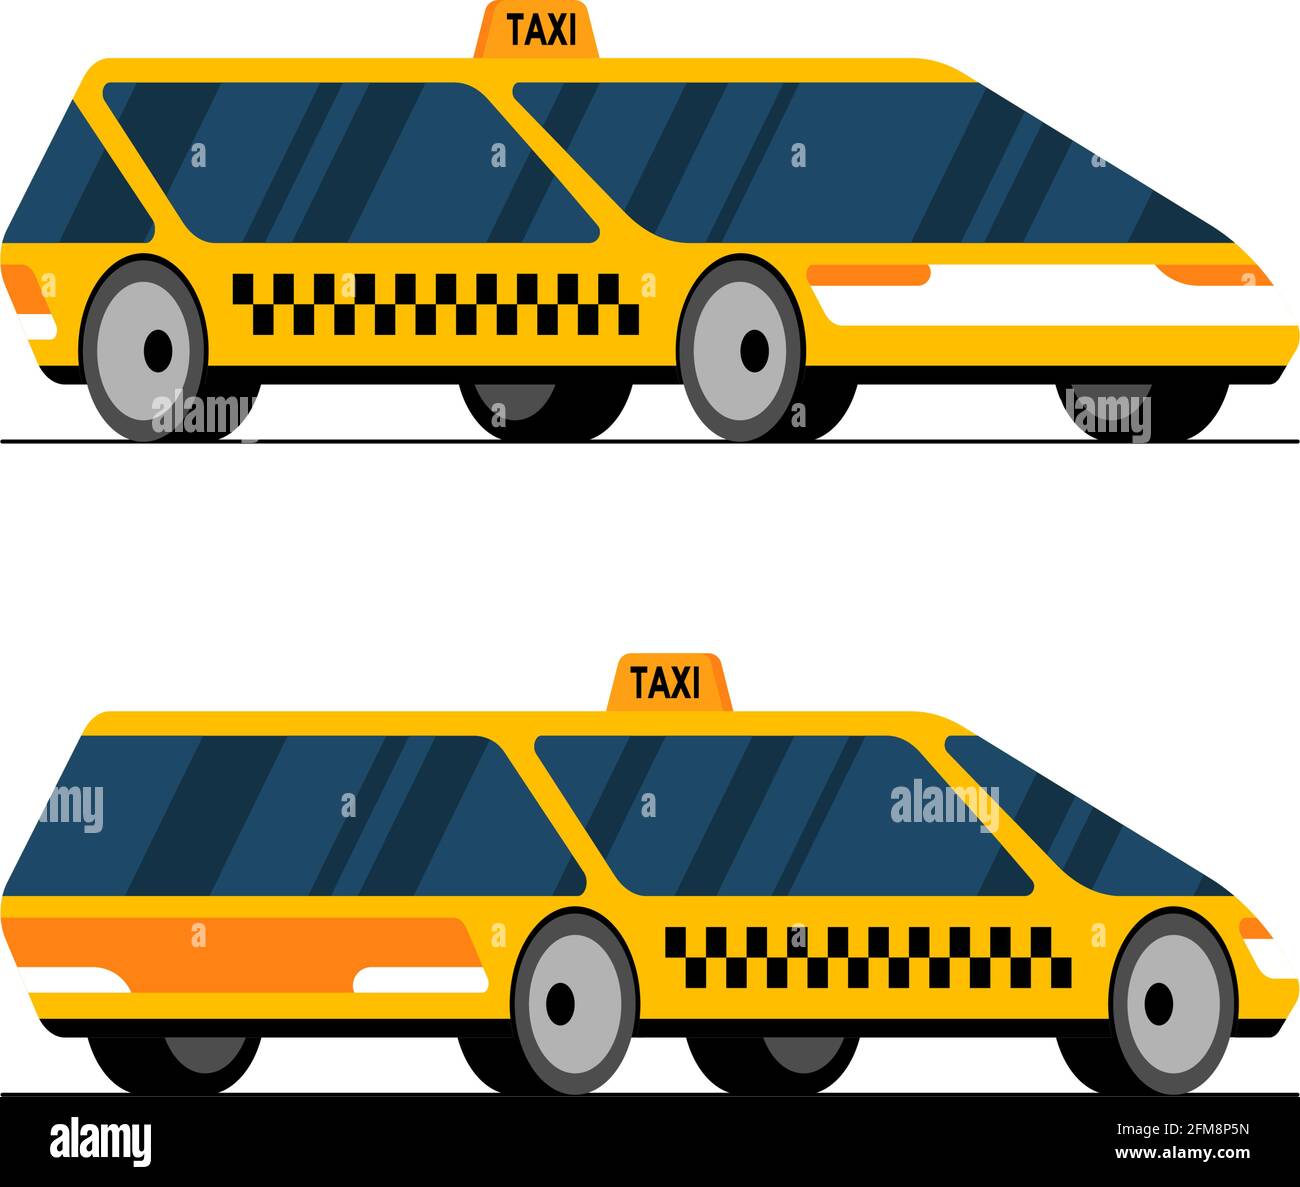 Taxi auto auto guida vista prospettica anteriore e posteriore laterale. Futuristico giallo senza equipaggio concetto taxi City servizio di trasporto set moderno flat vettore cartoon illustrazione stile Illustrazione Vettoriale